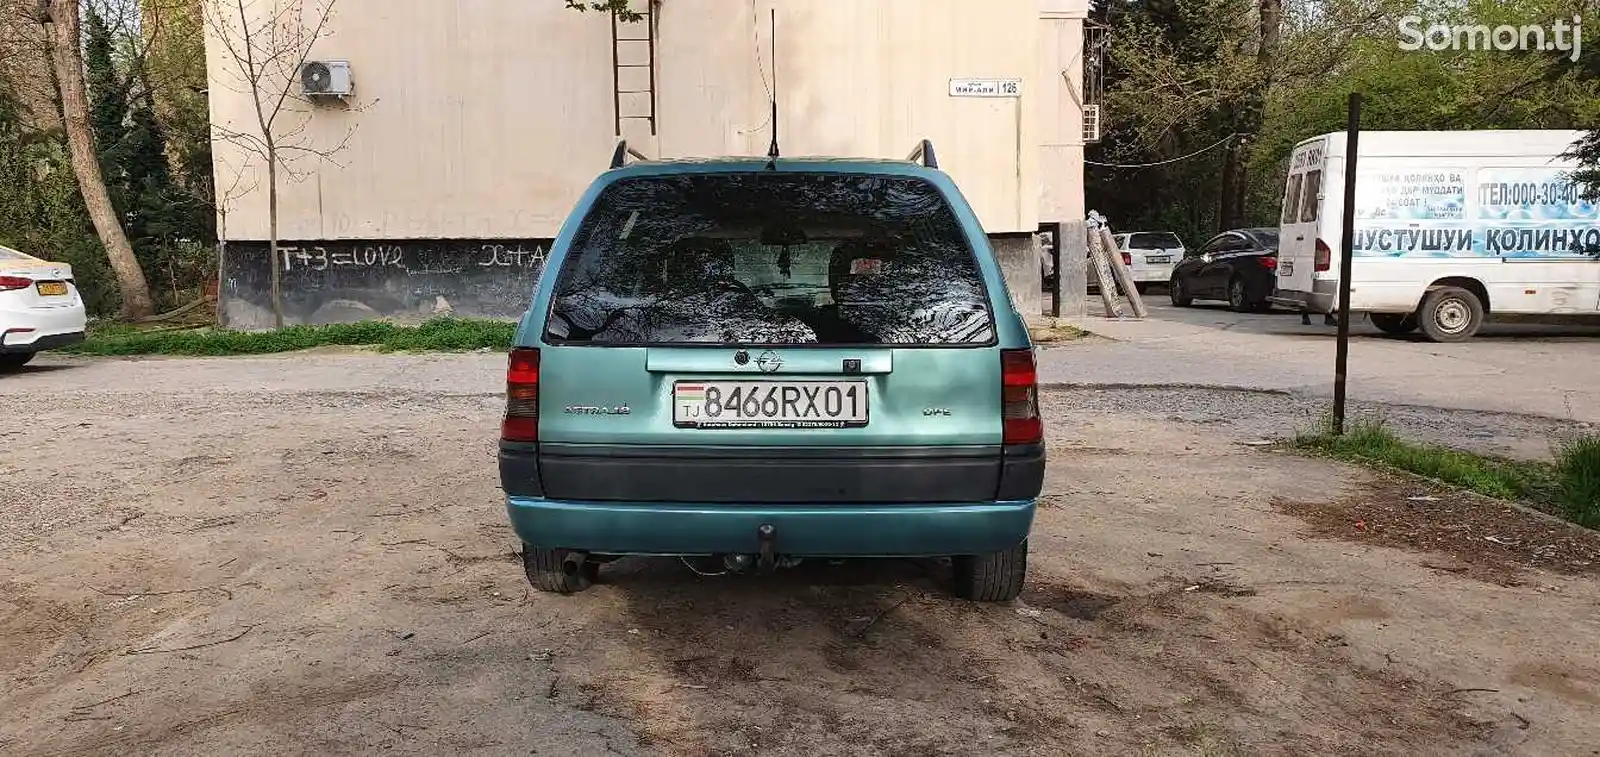 Opel Astra F, 1996-5